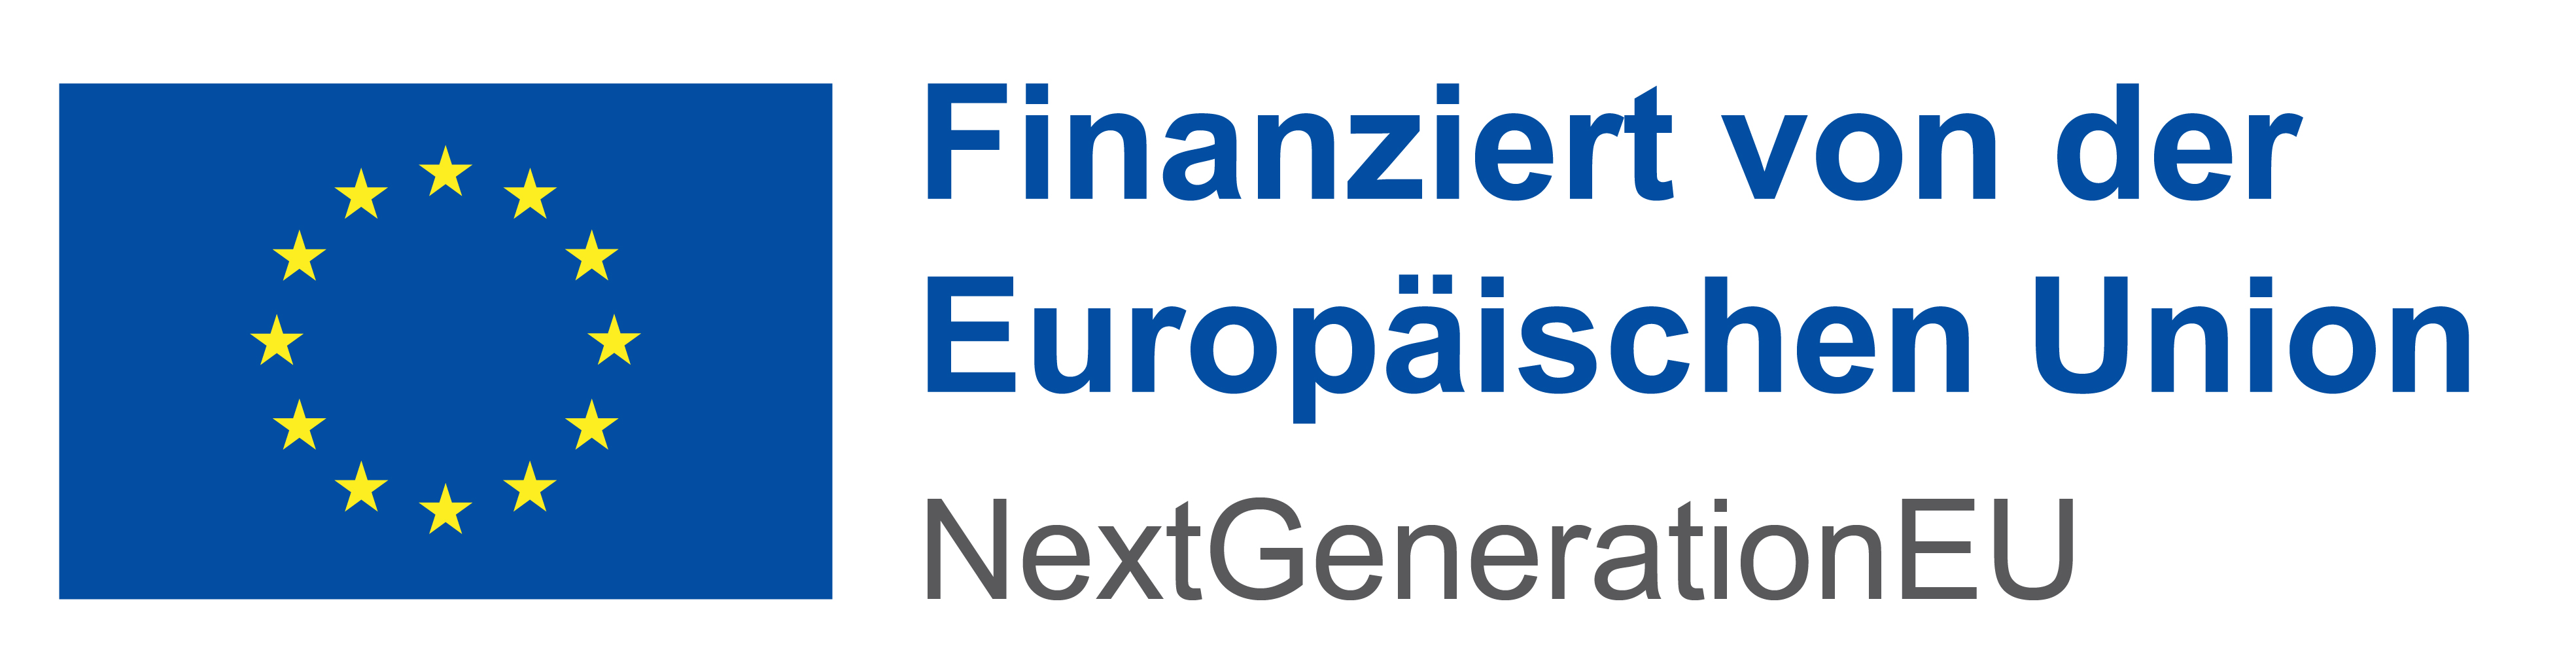 Logo - Finanziert von der Europäischen Union. NextGenerationEU